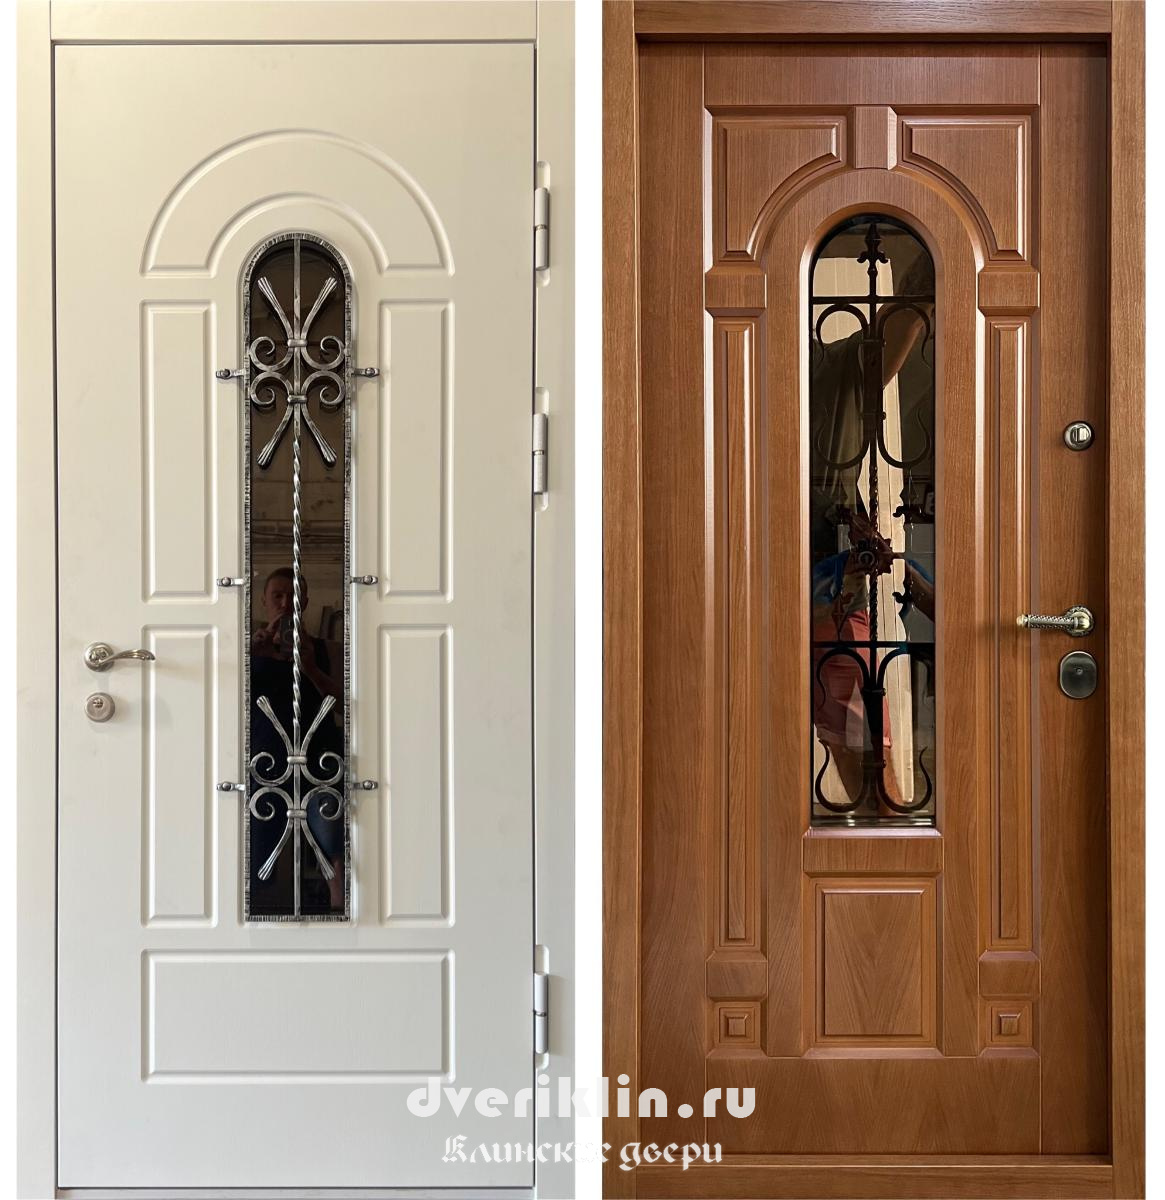 Дверь в дом MDD-56 (В частный дом)